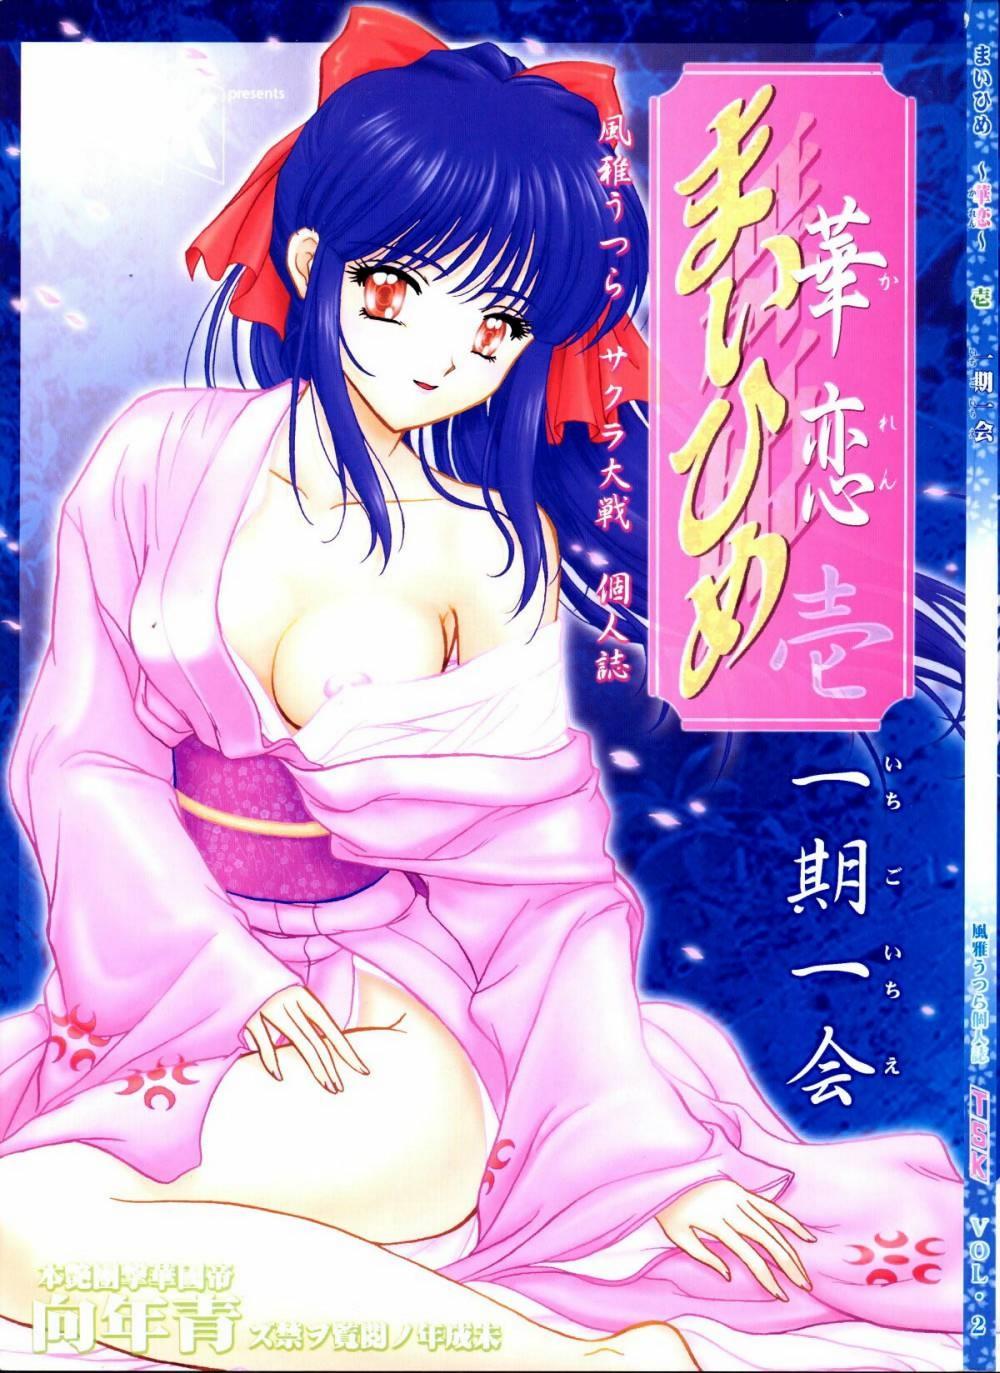 Hardfuck [TSK] Mai Hime ~Karen~ 1 Ichigo Ichie (Sakura Wars) - Sakura taisen Peludo - Page 1